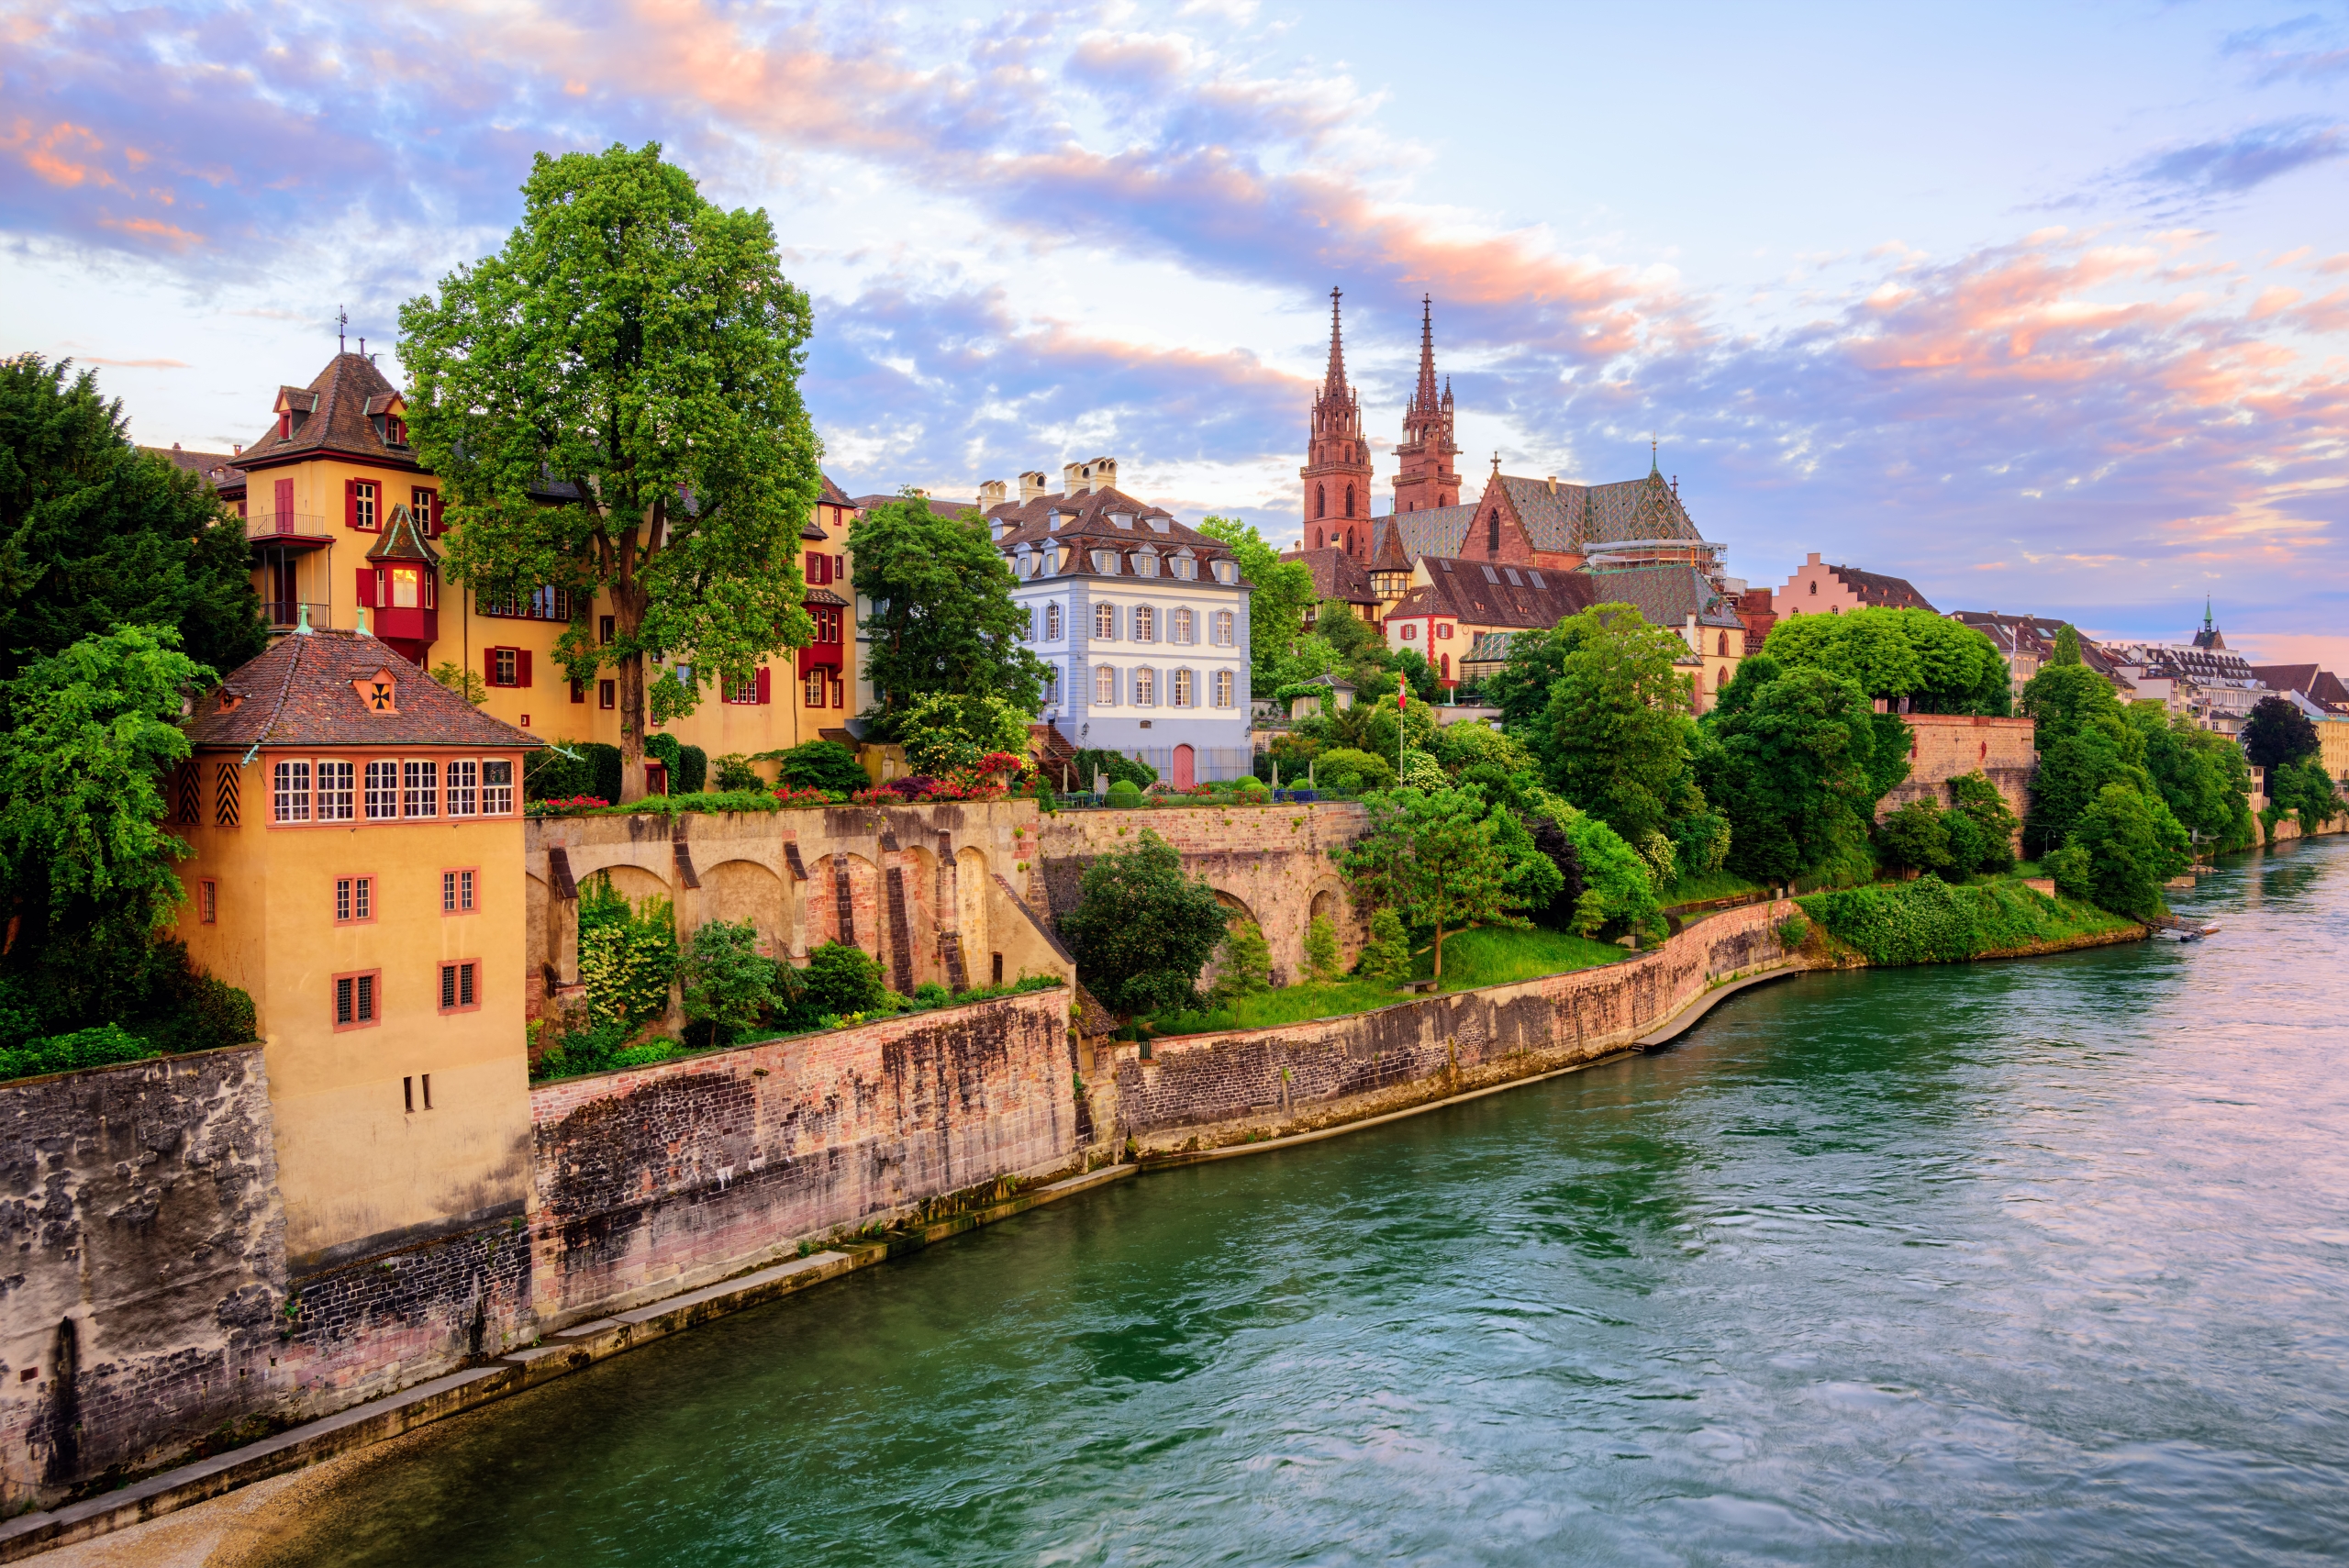 Rhine Bike & River Cruise: Basel to Amsterdam
